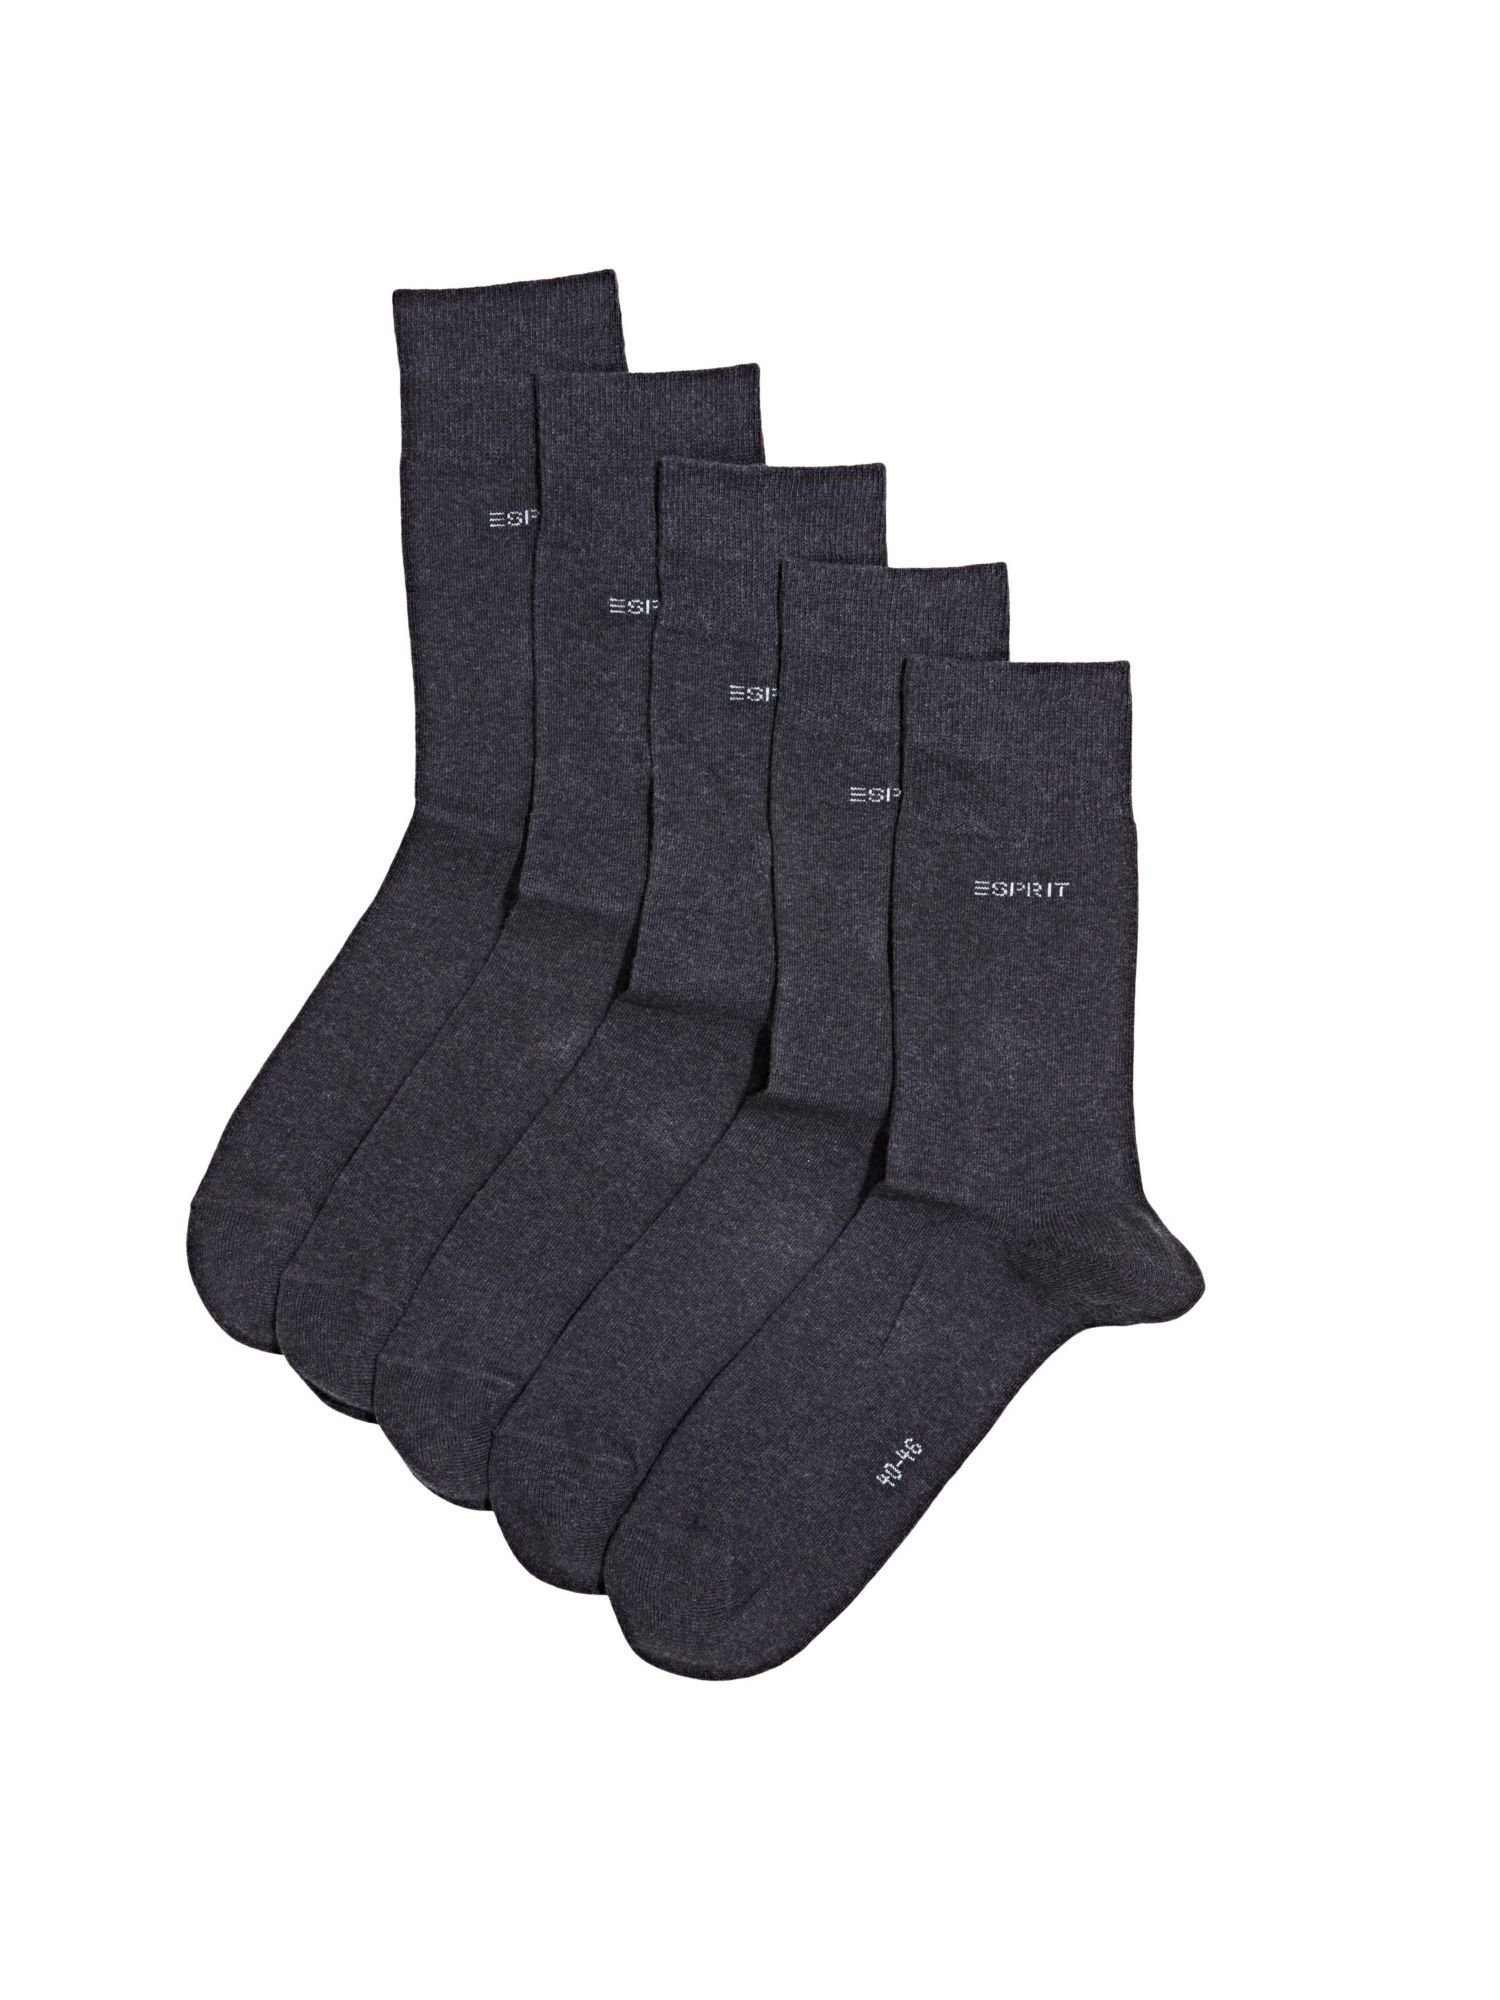 Bio-Baumwollmix Esprit ANTHRACITE MELANGE 5er-Pack Socken, Socken